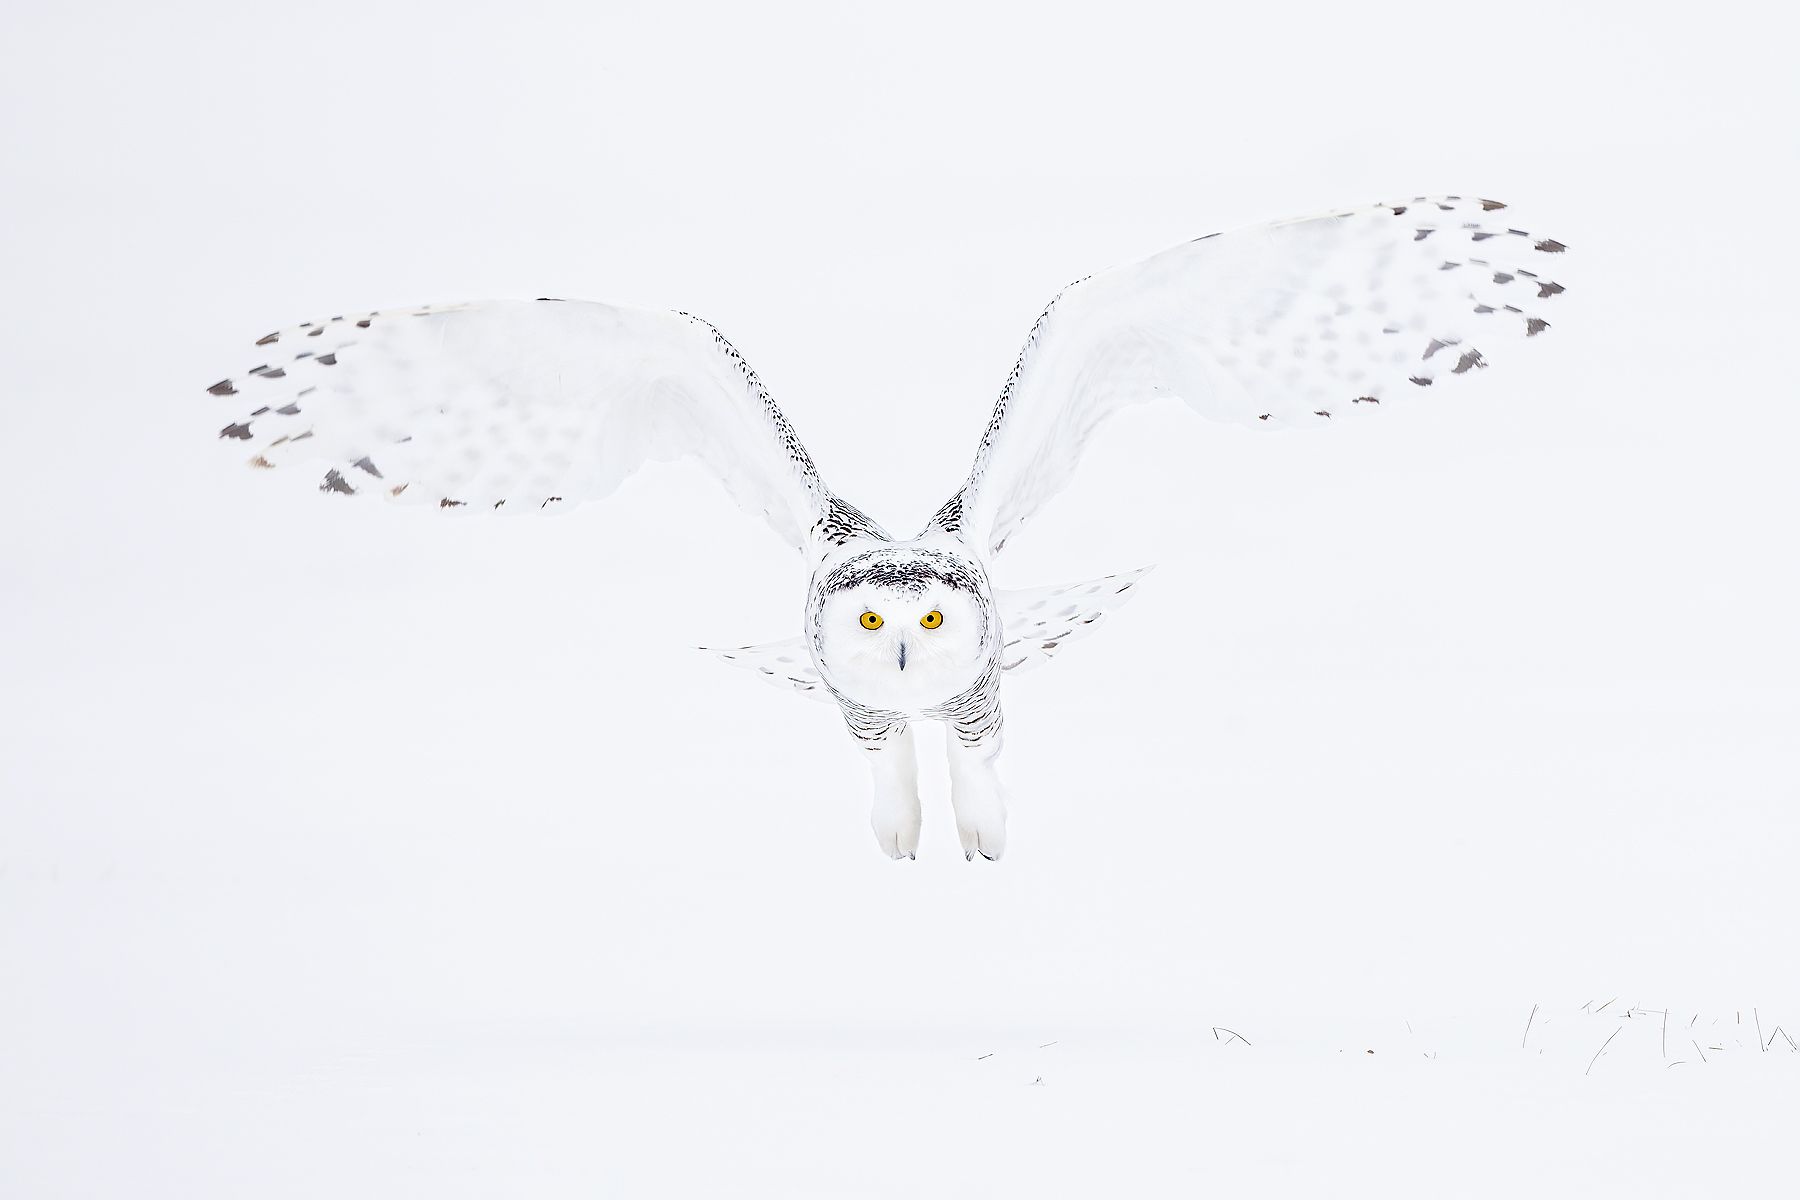 Clemens Vanderwerf - Snowy owl down the barrel.jpg